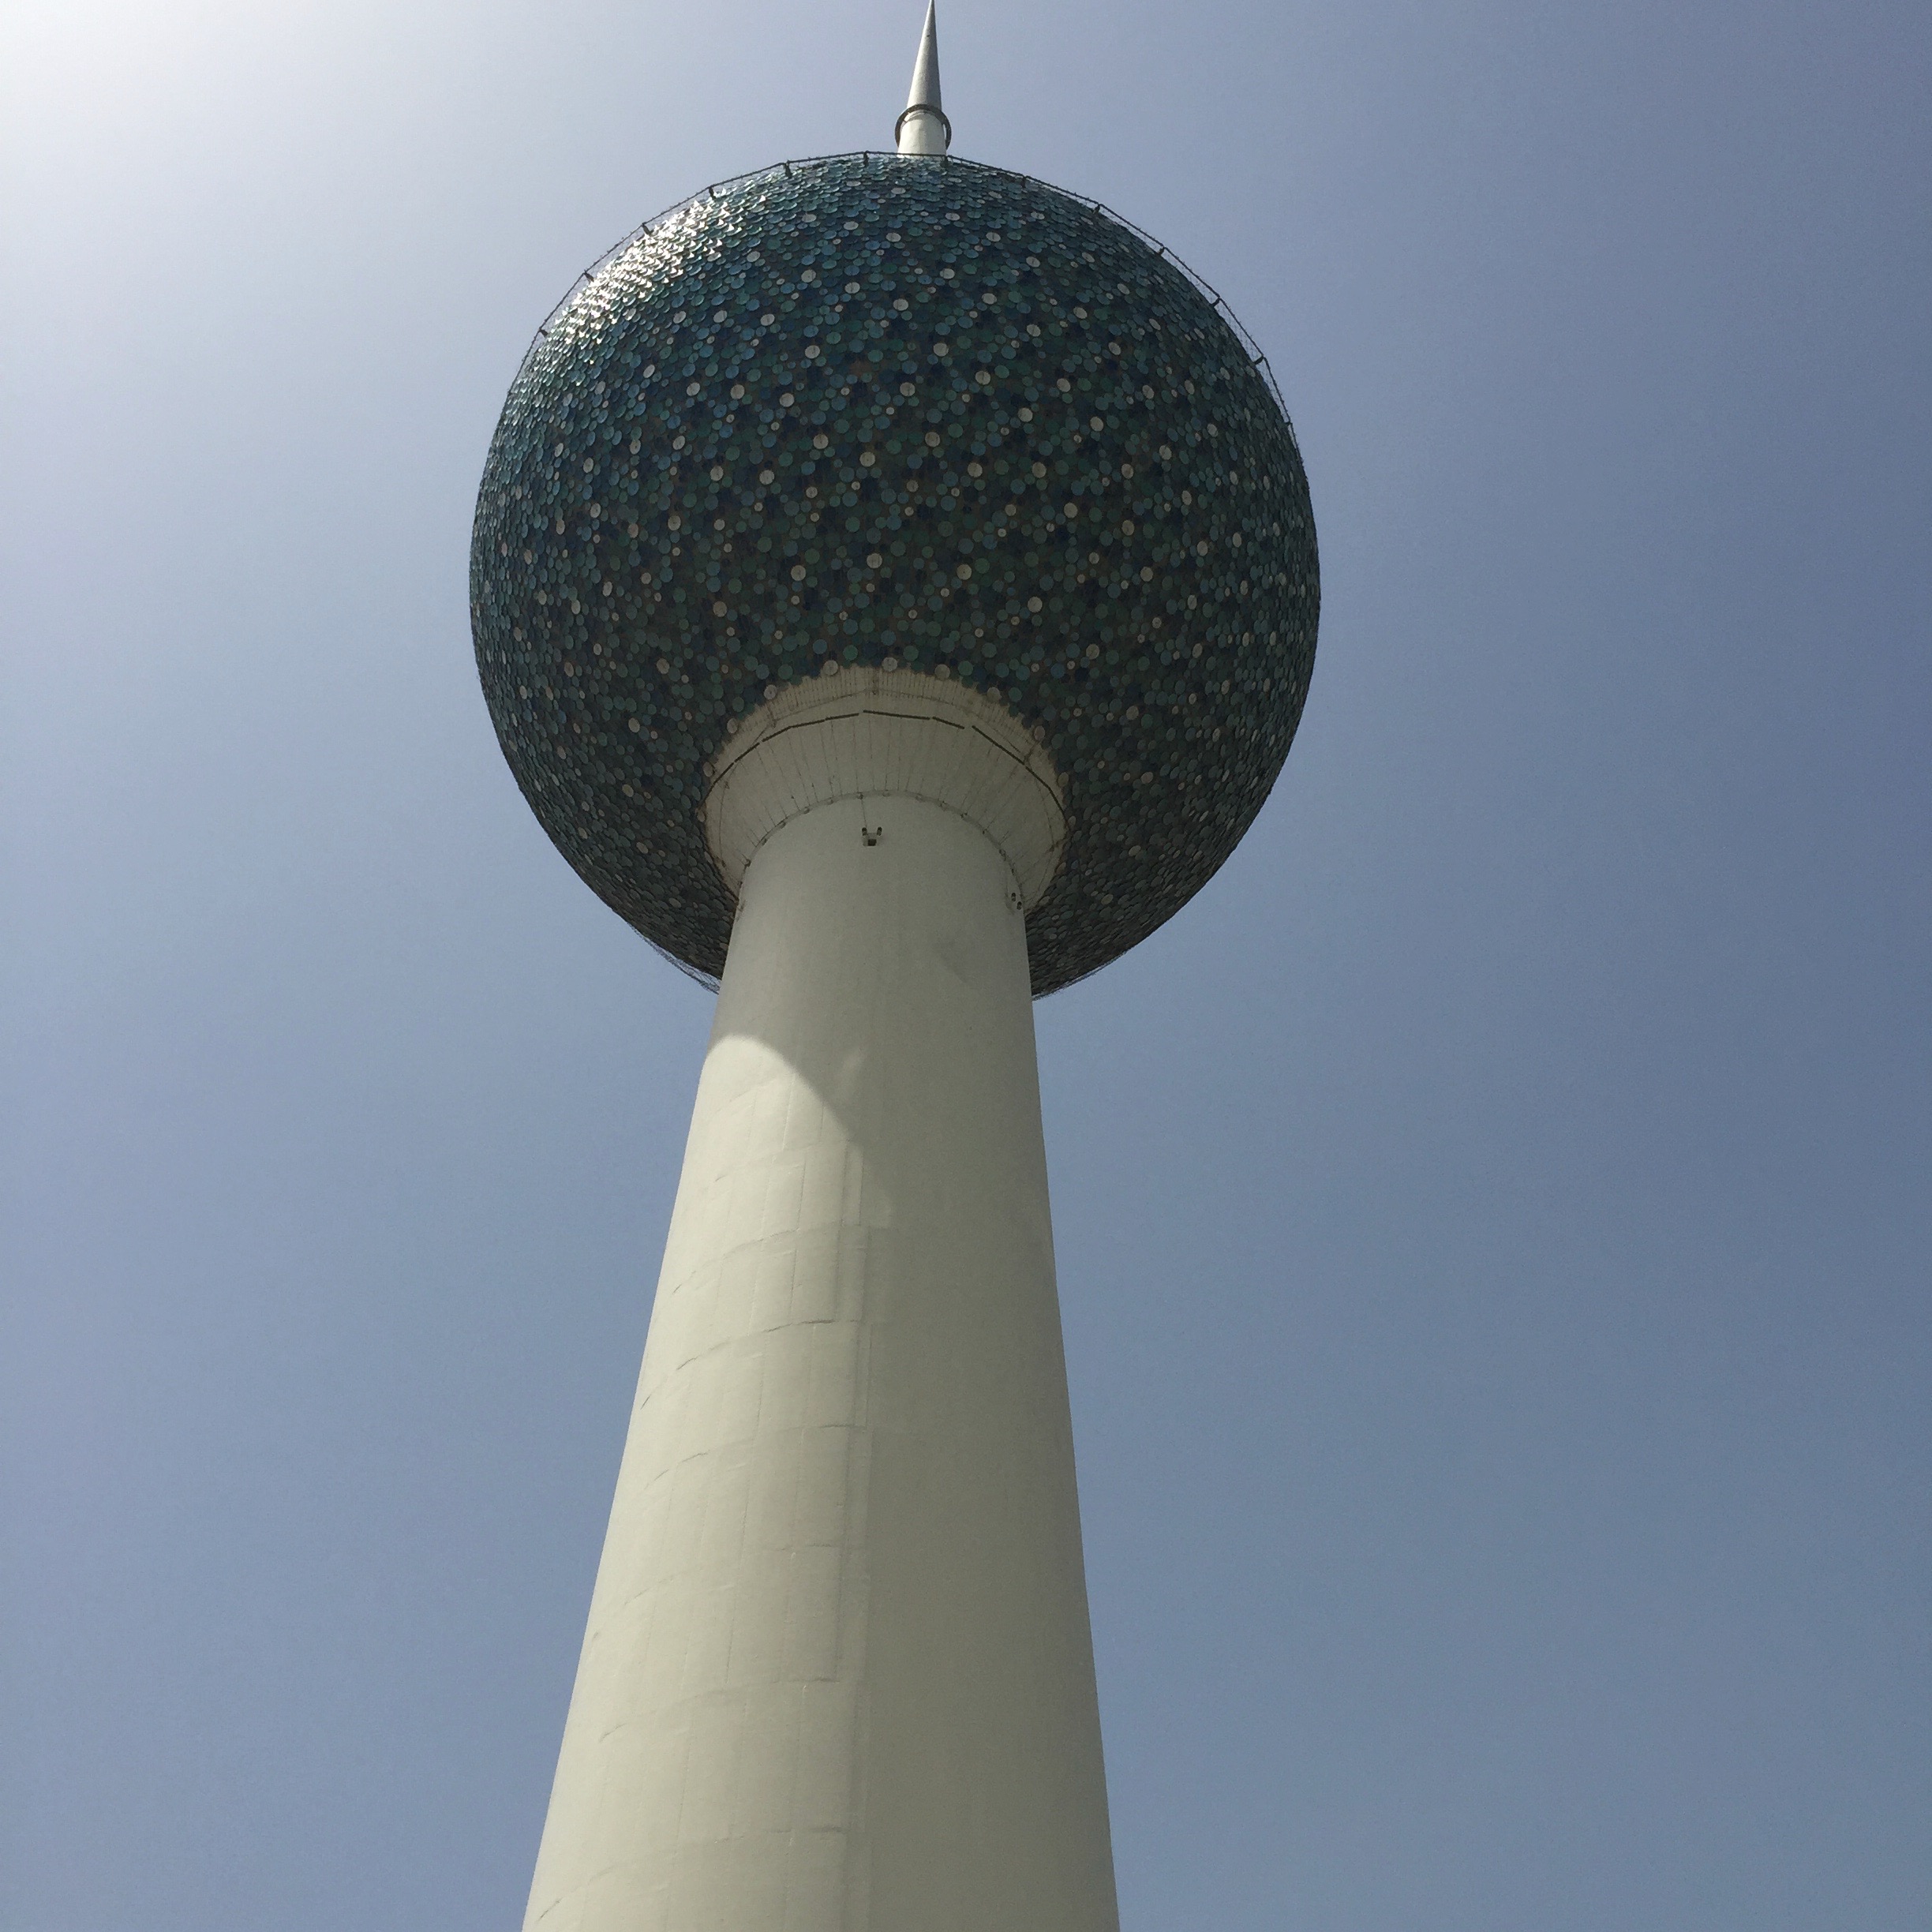 A Kuwait Towers egyik tagja alulról